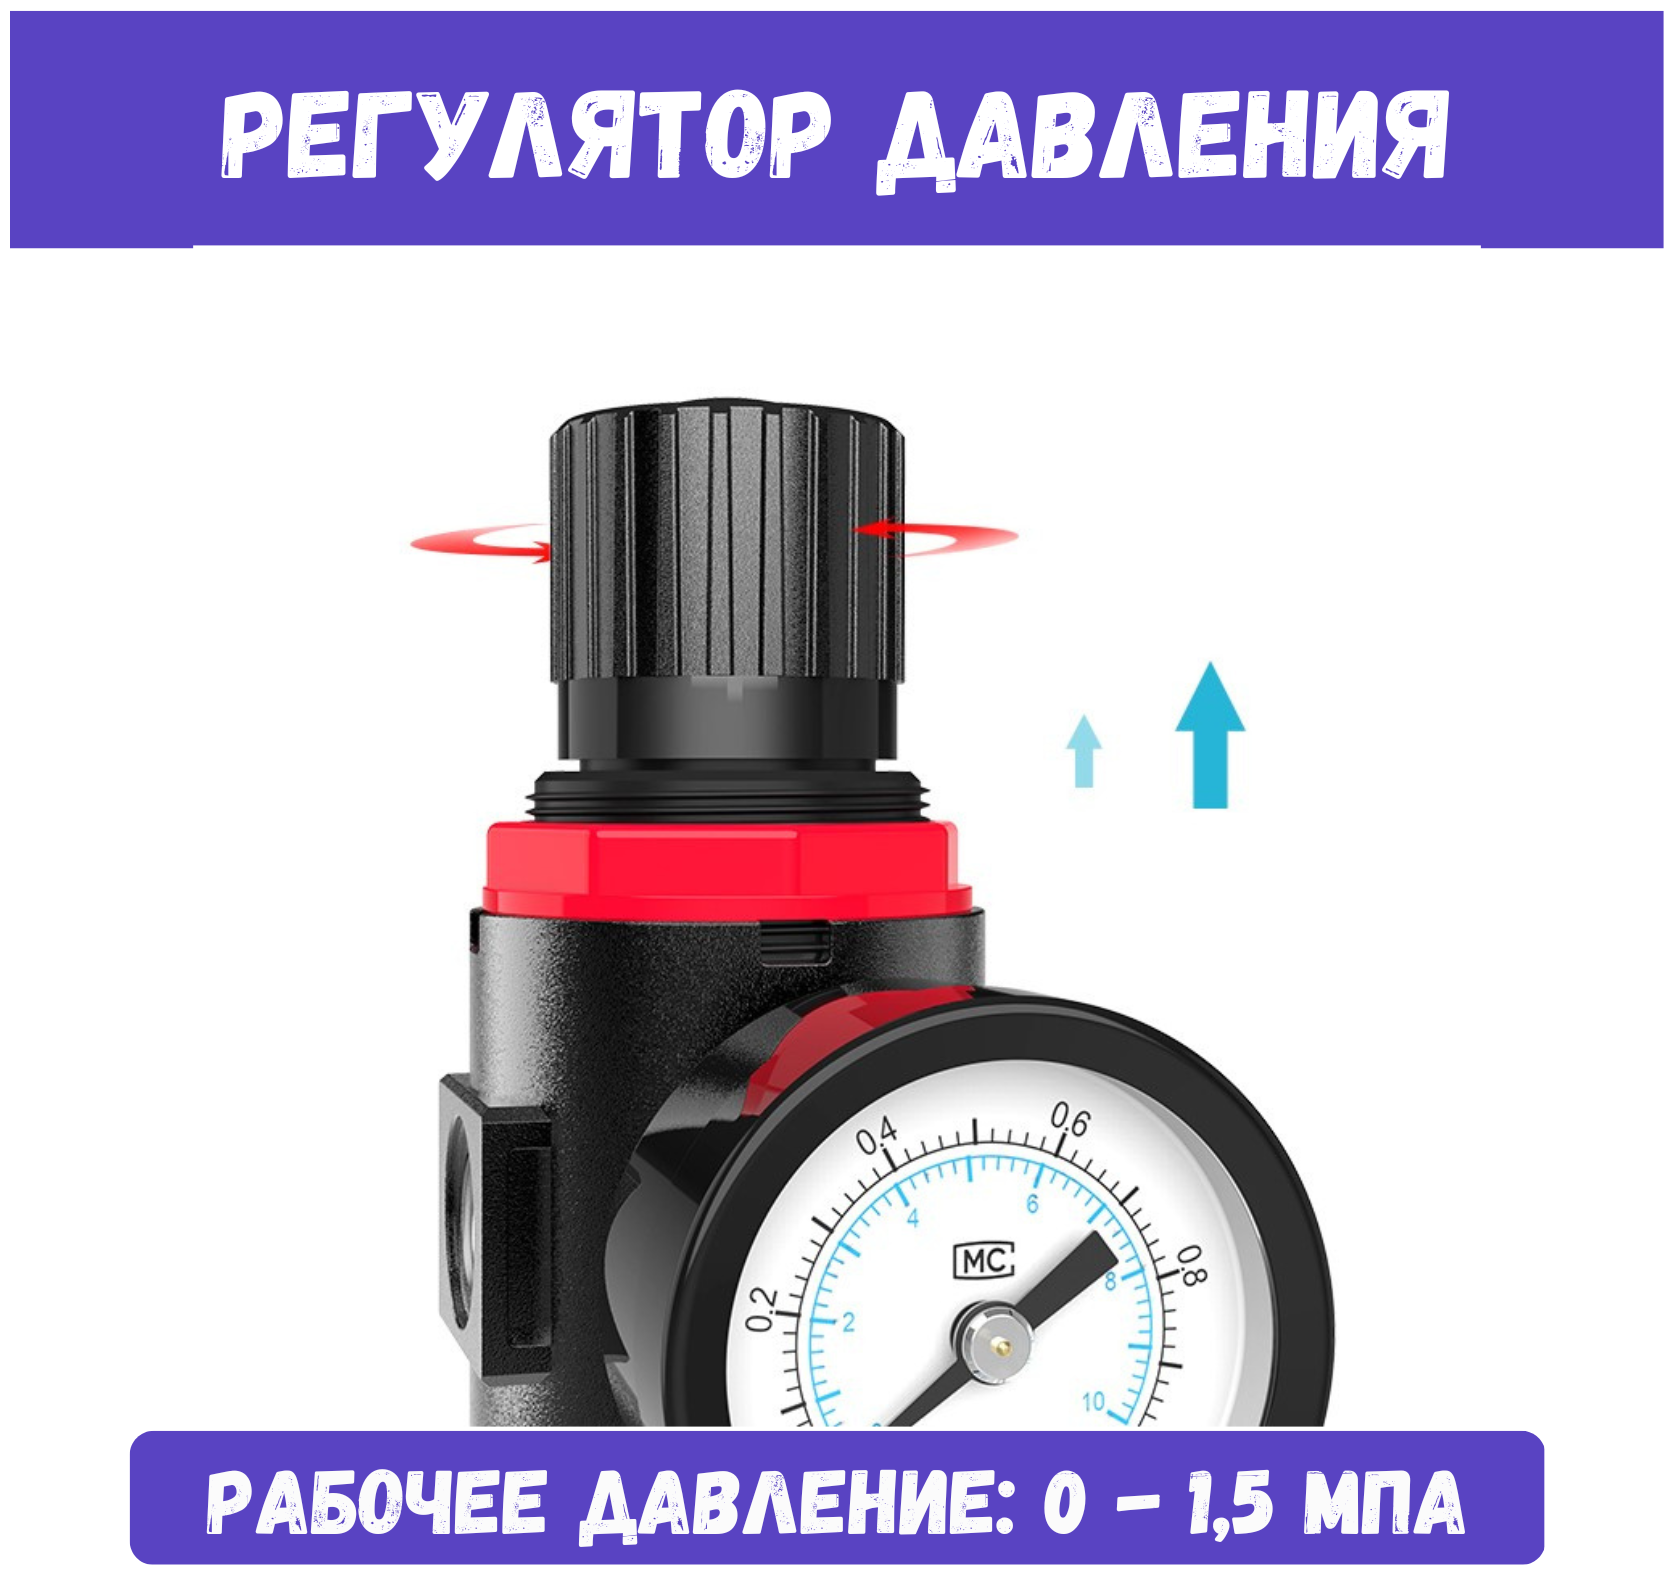 Фильтр влагоотделитель AFR-2000 с регулятором давления воздуха / Ловушка-фильтр регулятор с манометром / AFR-2000